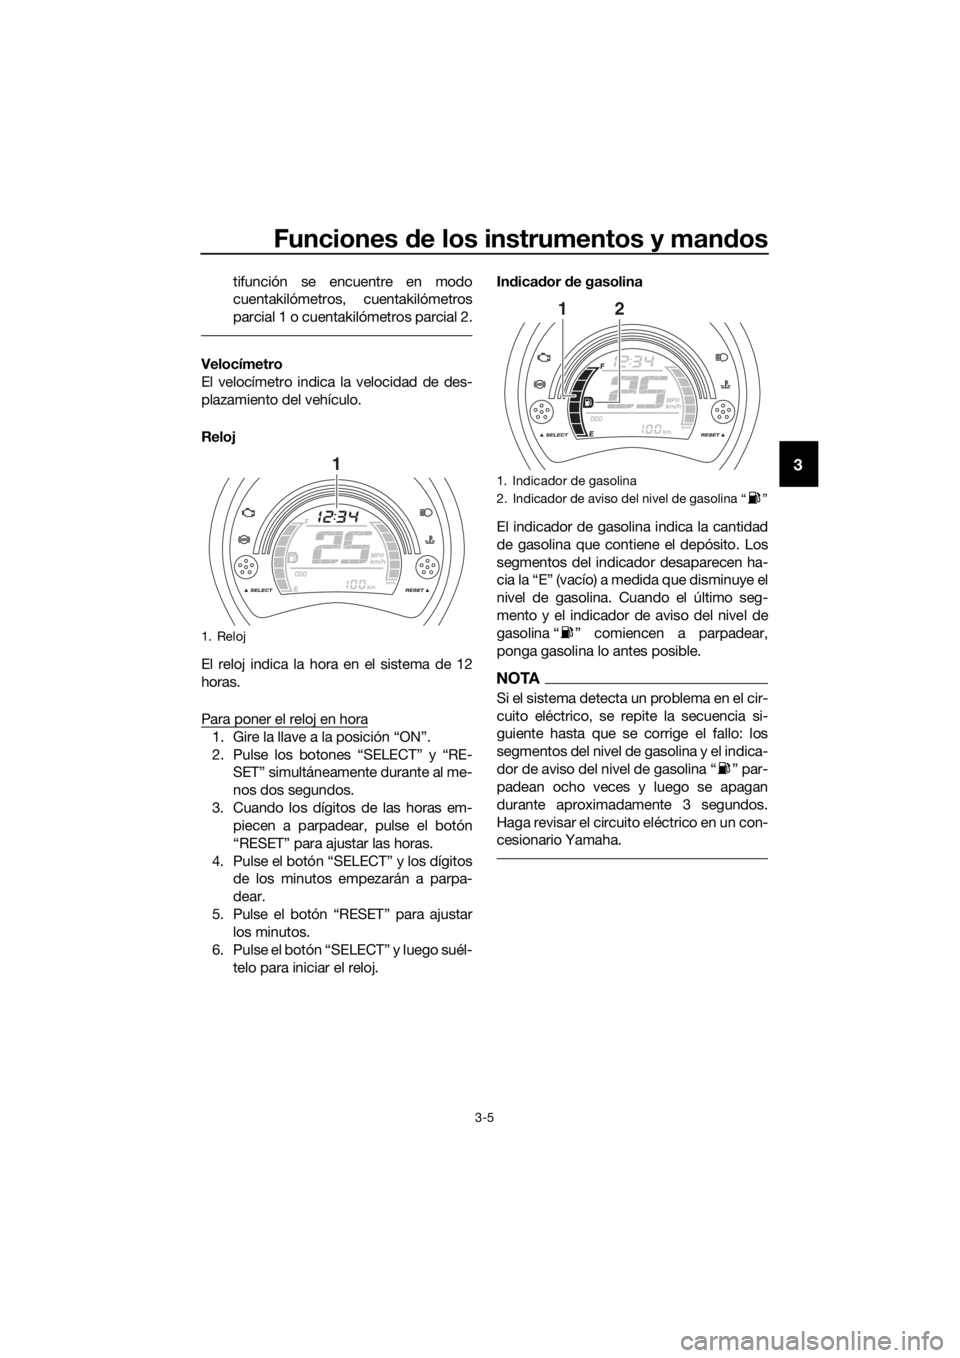 YAMAHA NMAX 125 2017  Manuale de Empleo (in Spanish) Funciones de los instrumentos y man dos
3-5
3
tifunción se encuentre en modo
cuentakilómetros, cuentakilómetros
parcial 1 o cuentakilómetros parcial 2.
Velocímetro
El velocímetro indica la veloc